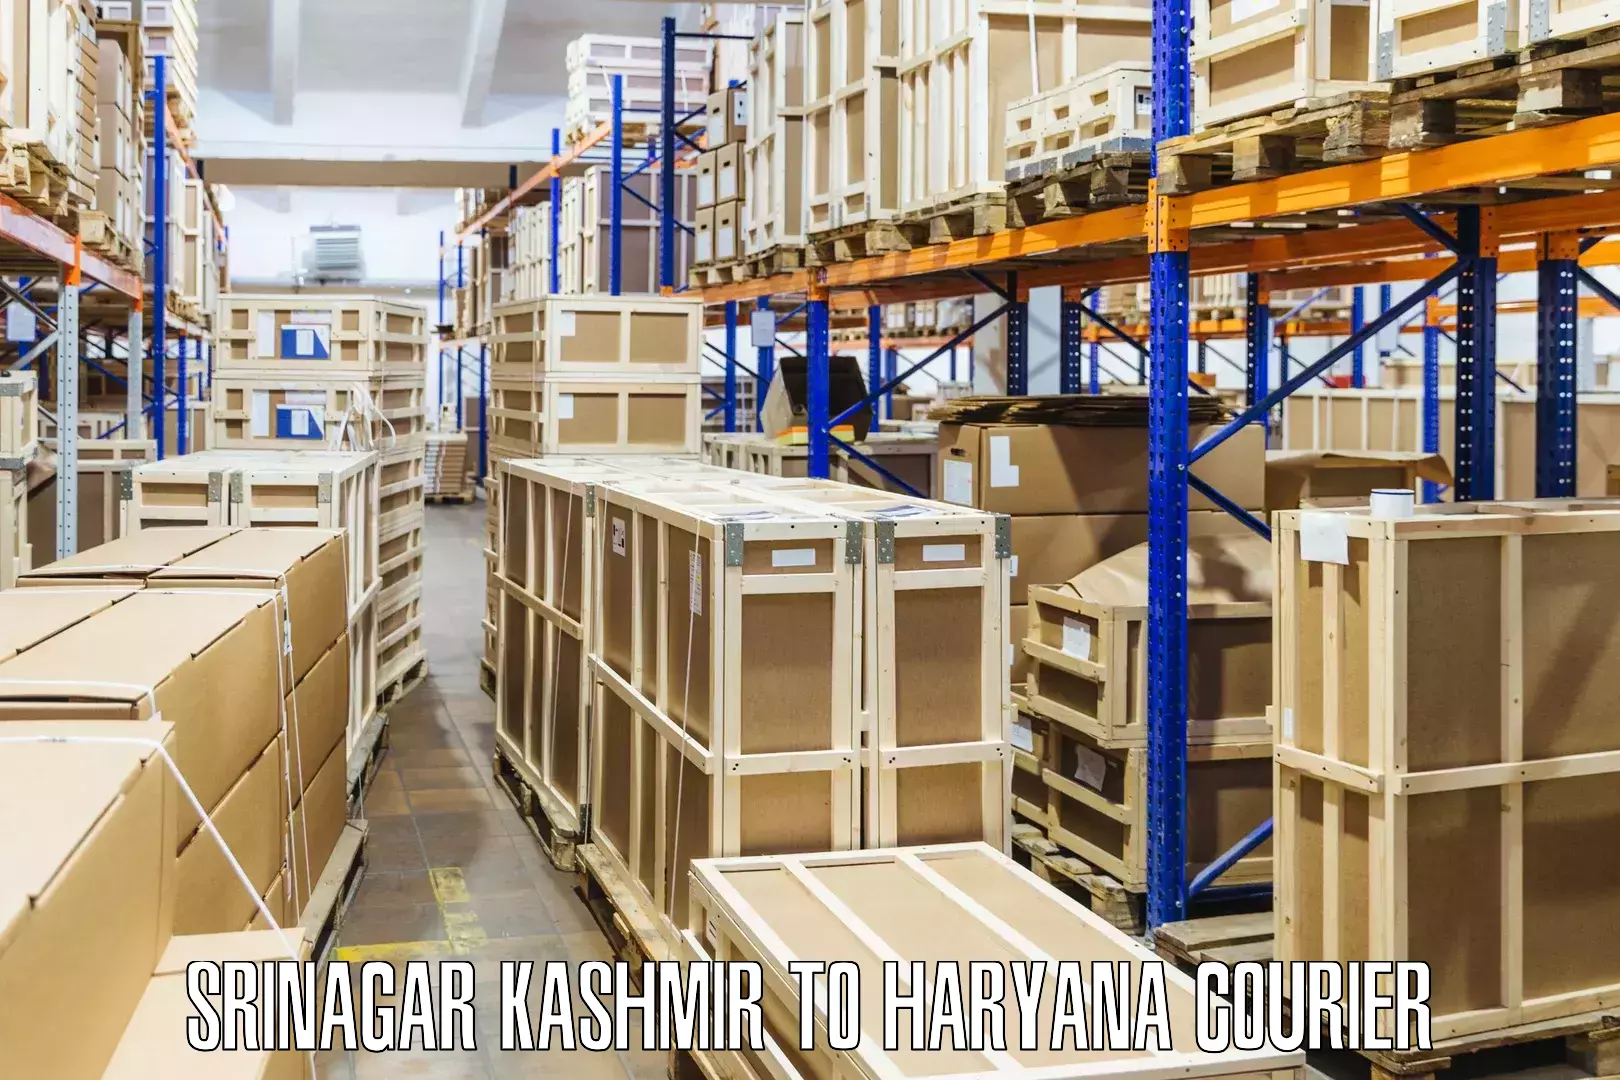 Express logistics providers Srinagar Kashmir to Assandh